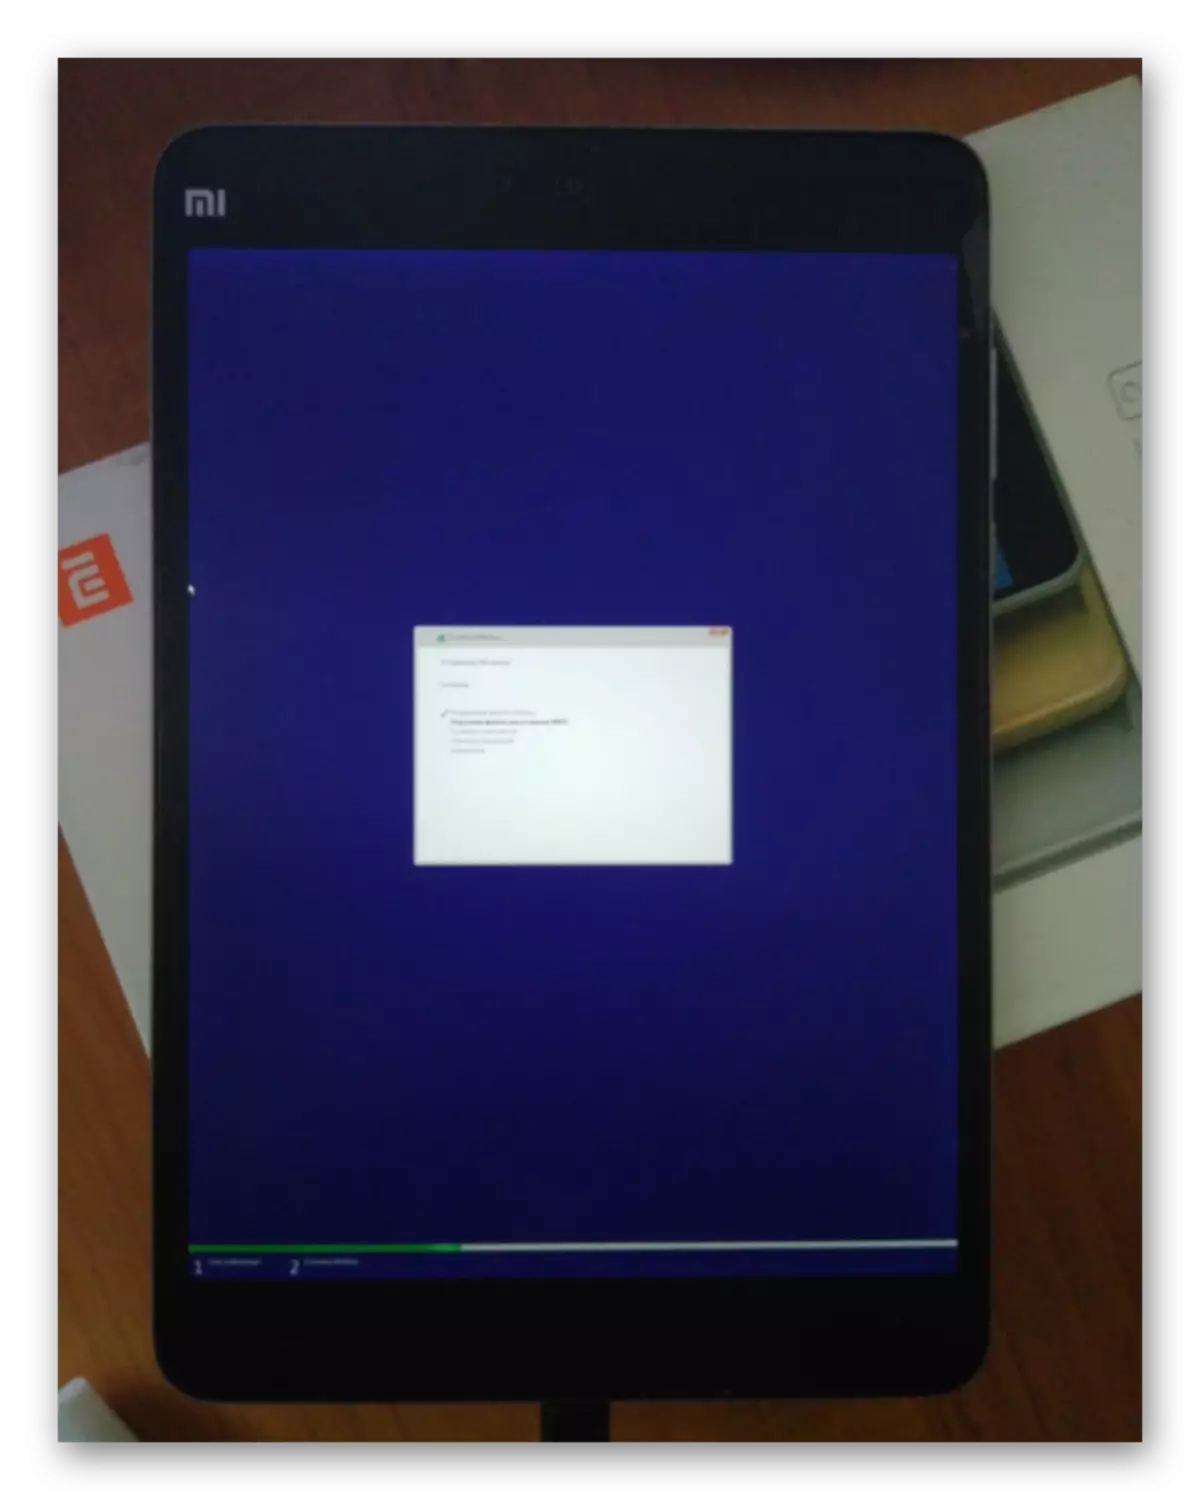 Xiaomi MIPAD 2 proses pemasangan Windows 10 berlangsung lebih daripada satu jam